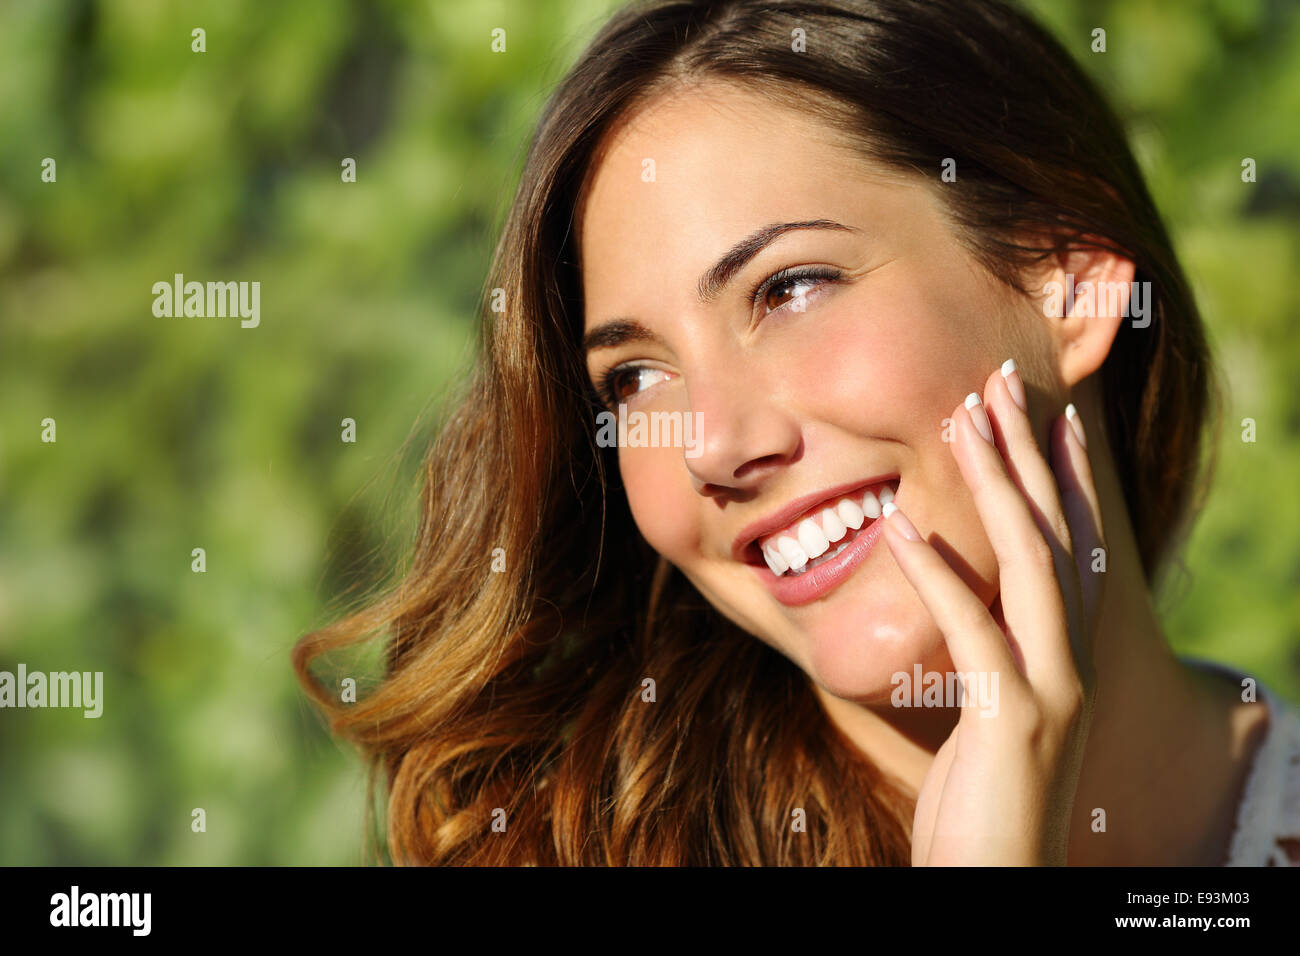 La bellezza della donna con un sorriso perfetto e dente bianco con uno sfondo verde Foto Stock